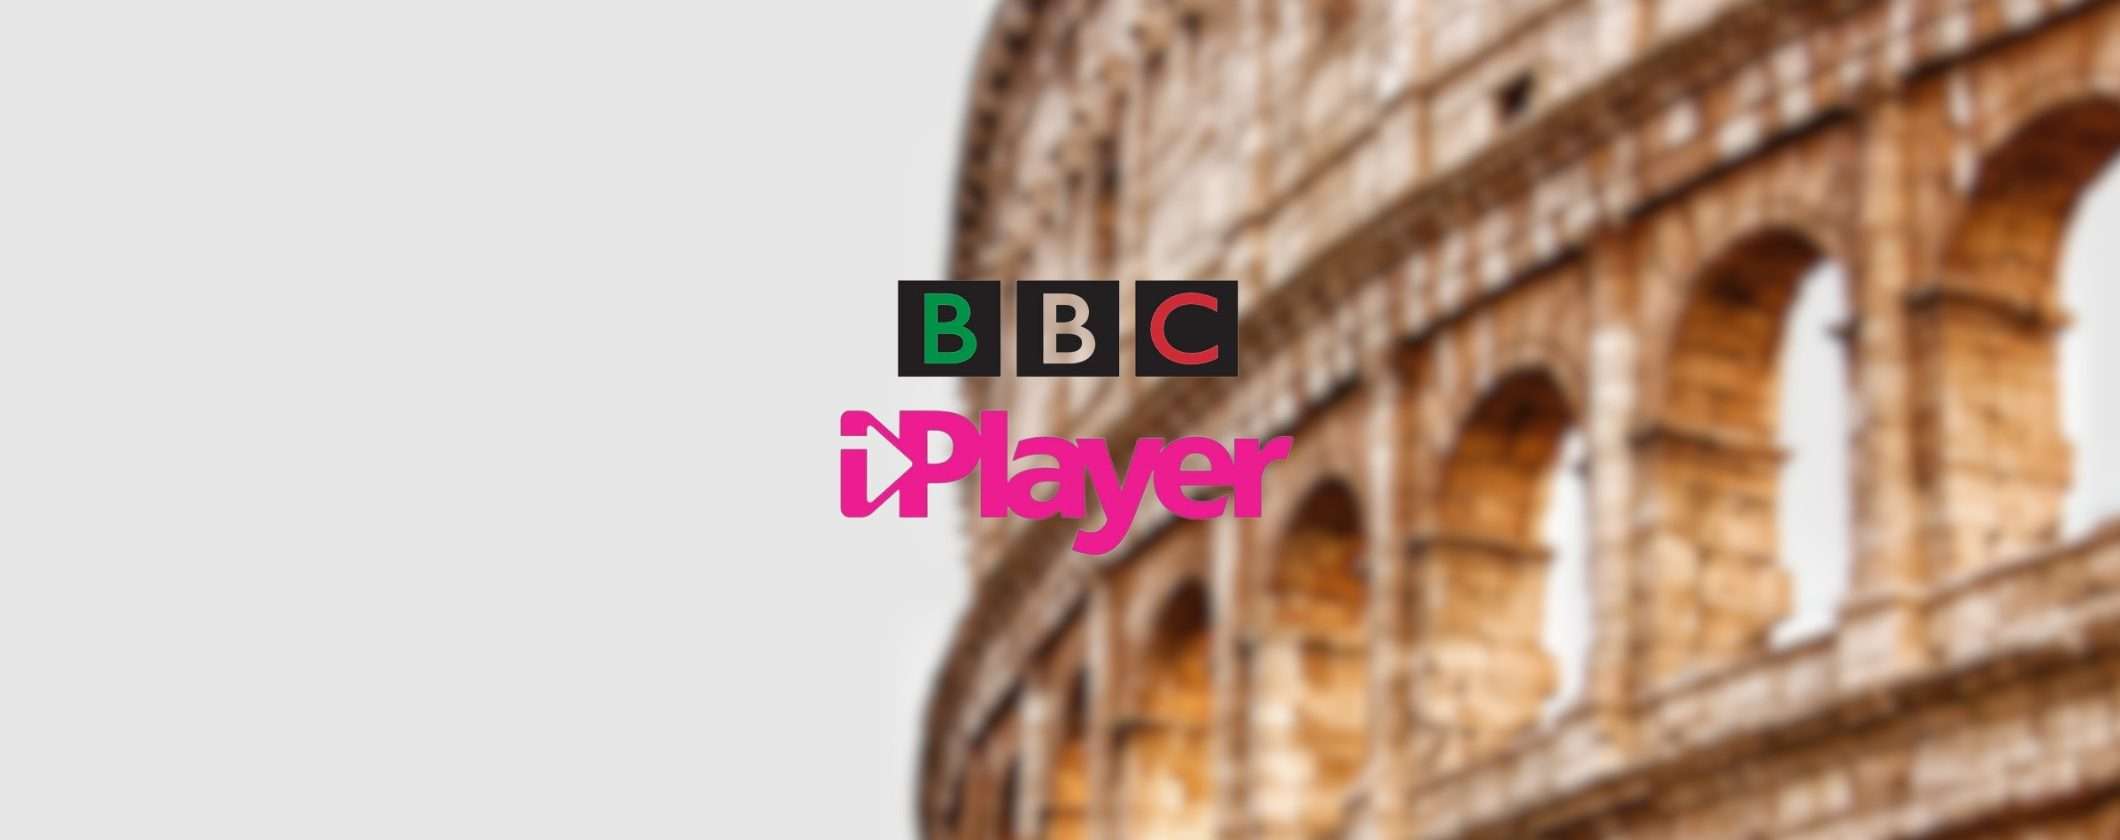 Come vedere BBC iPlayer dall'Italia senza restrizioni